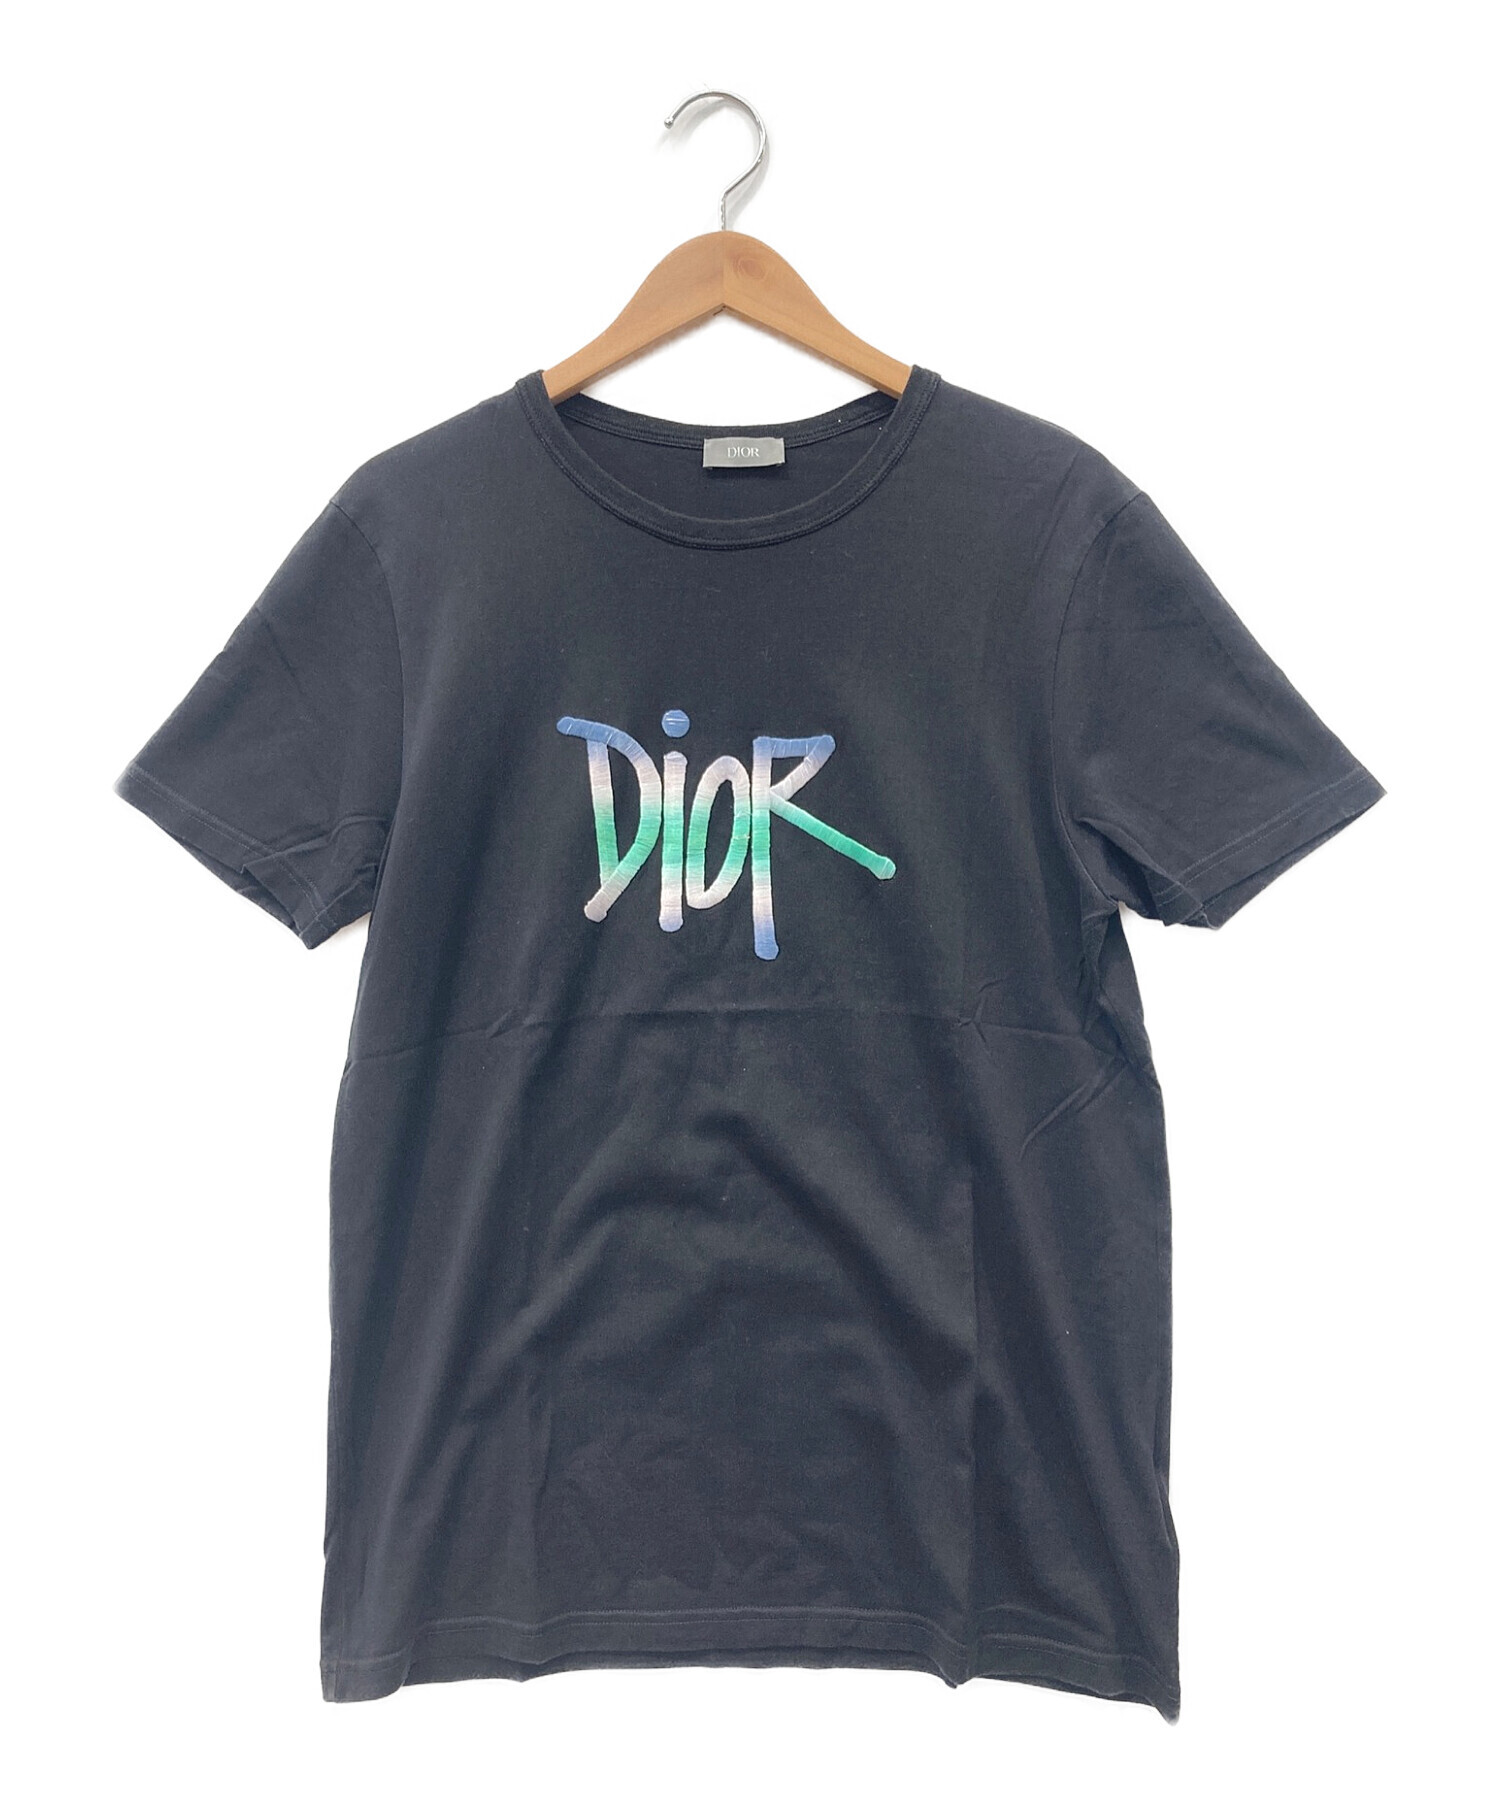 Christian Dior　Tシャツ　刺繍よろしくお願いいたします